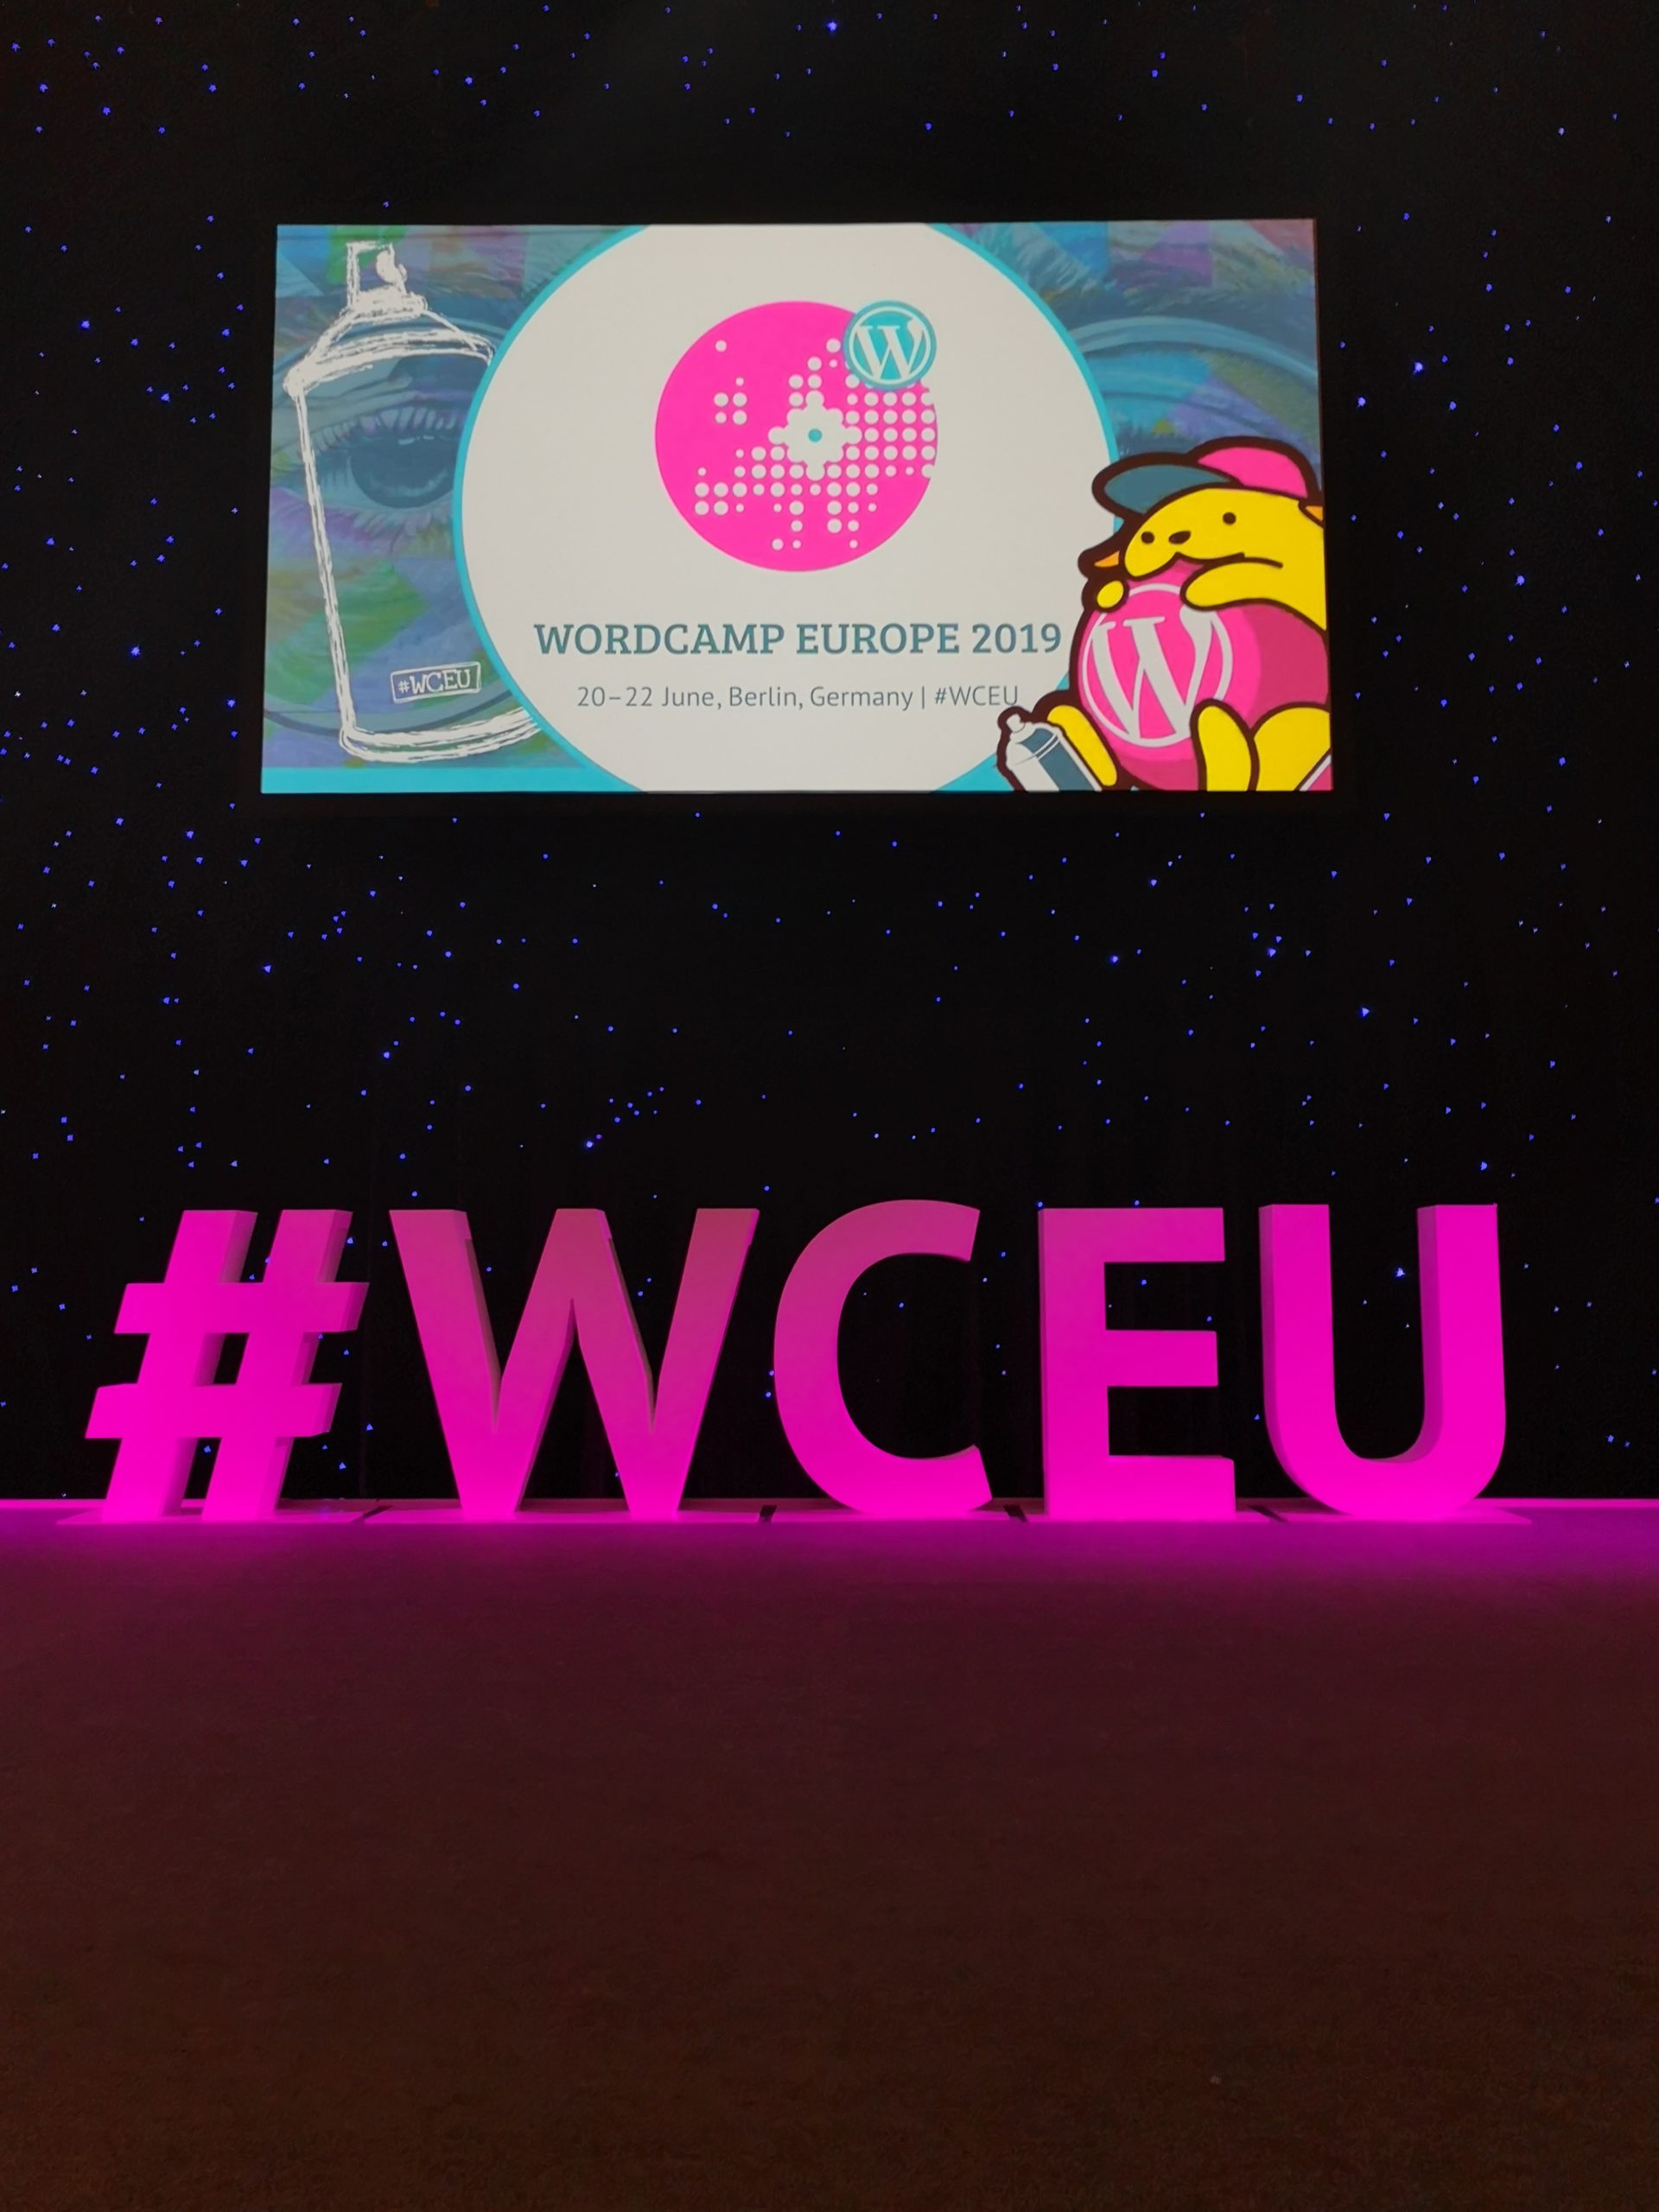 WCEU 2019 Hashtag Logo und Wapuu